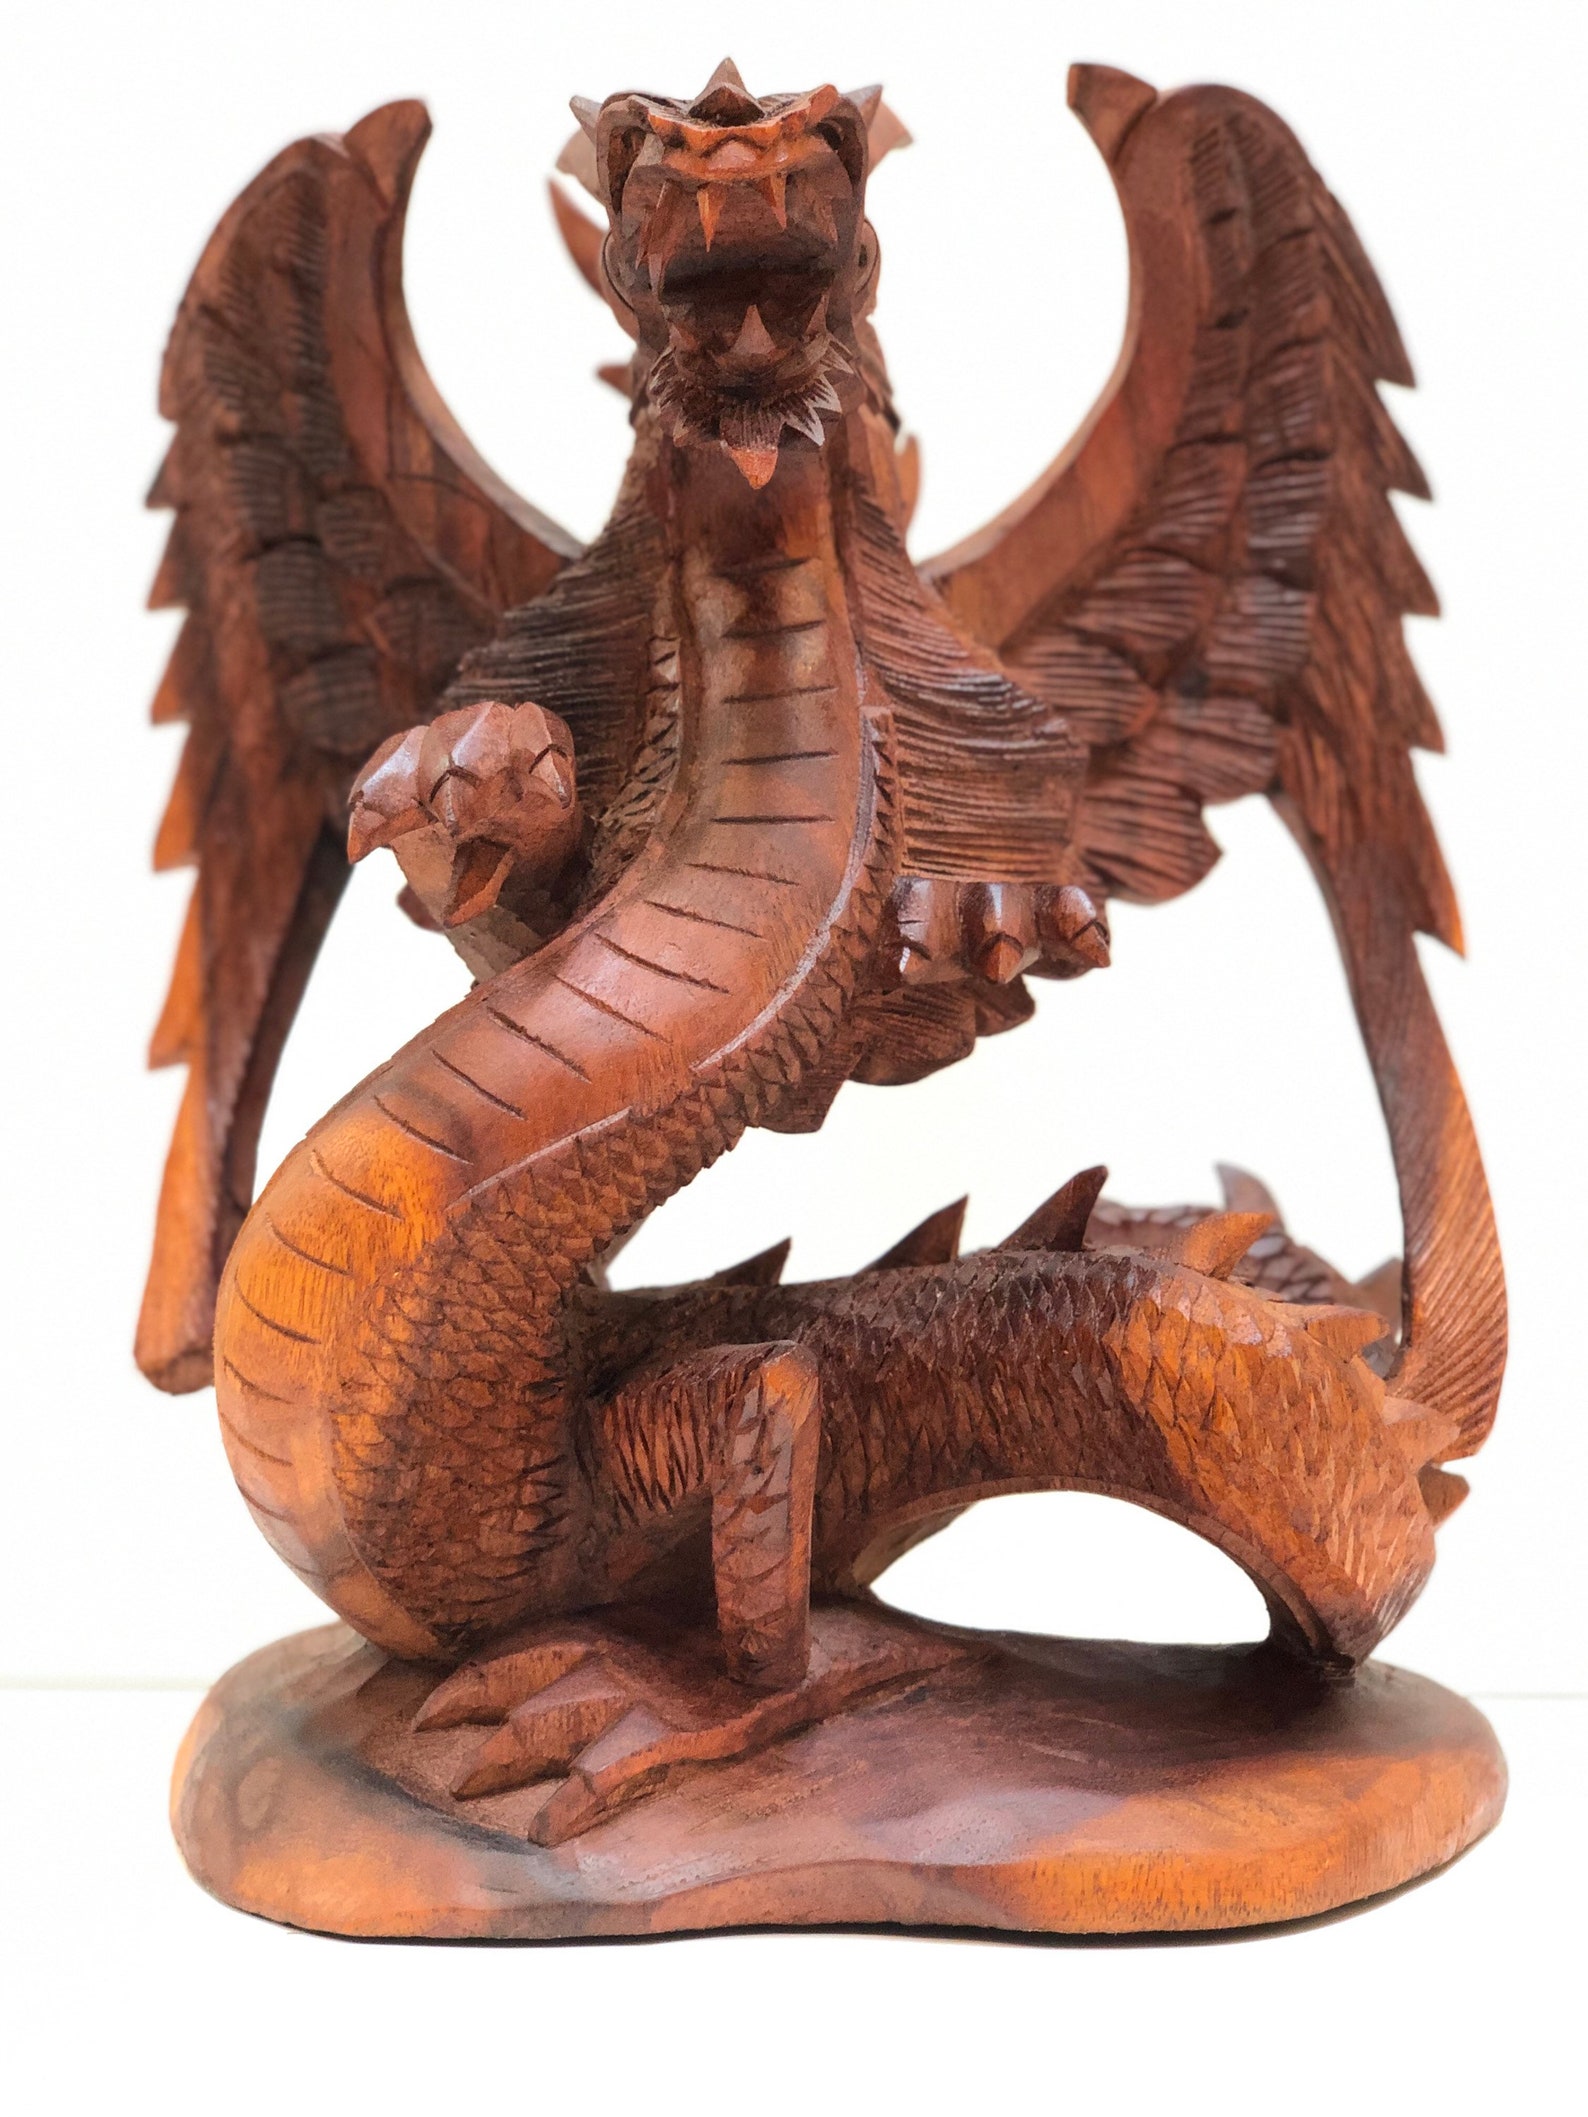 dragon travel madera